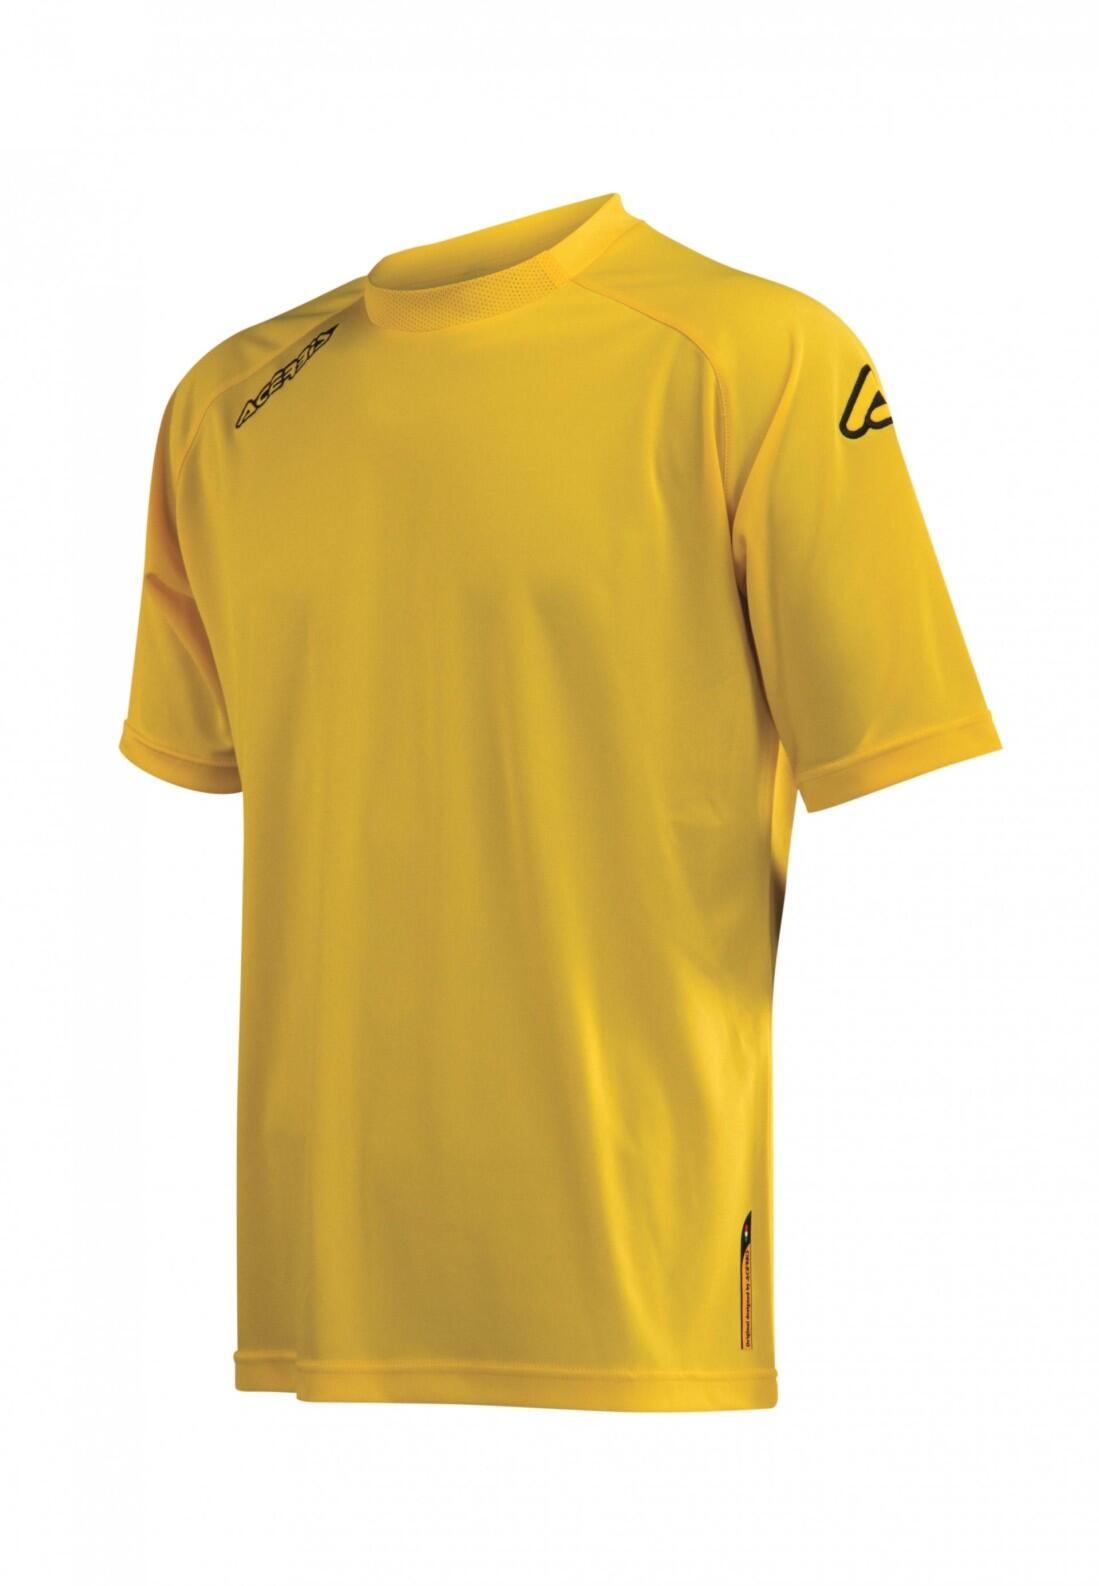 Kurzarm-Trainings-Shirt ATLANTIS v. ACERBIS , gelb